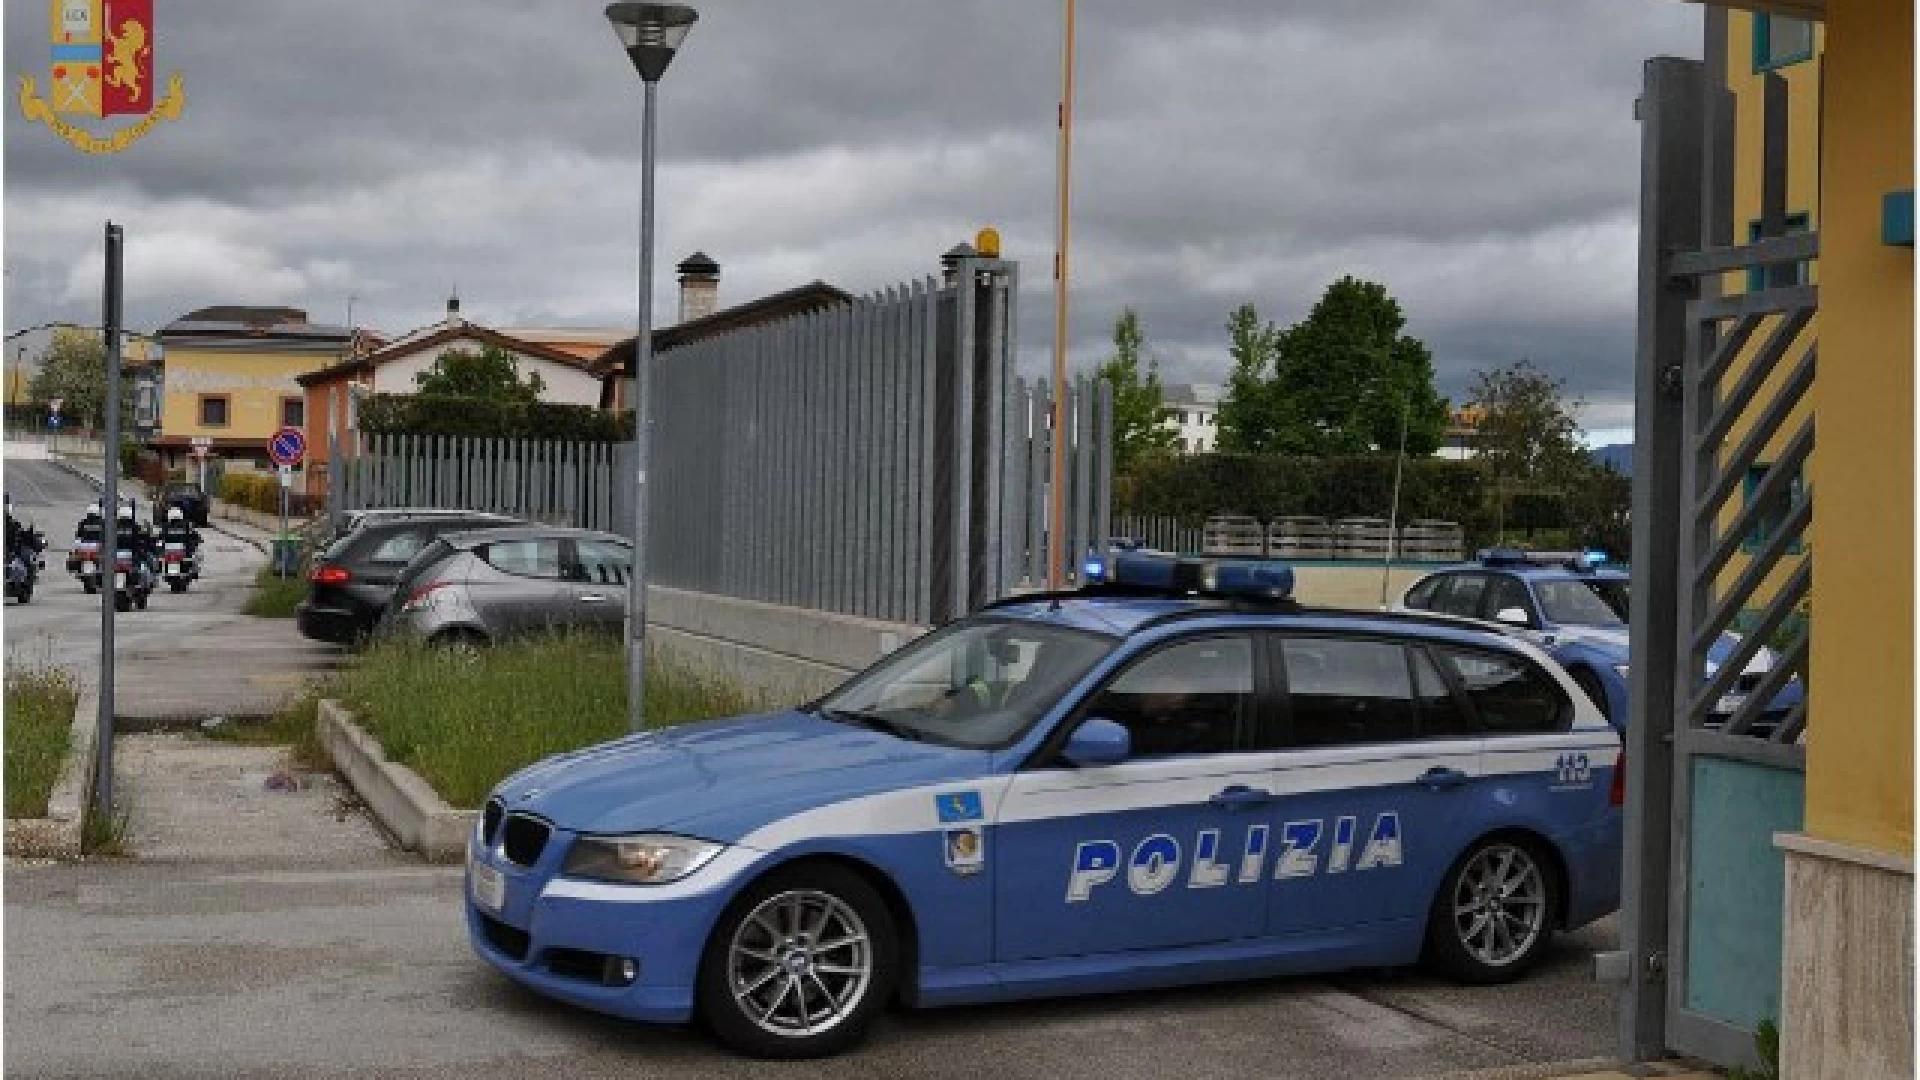 Polizia di Stato - Isernia: La Polizia impegnata nel contrasto delle intestazioni fittizie di autoveicoli.